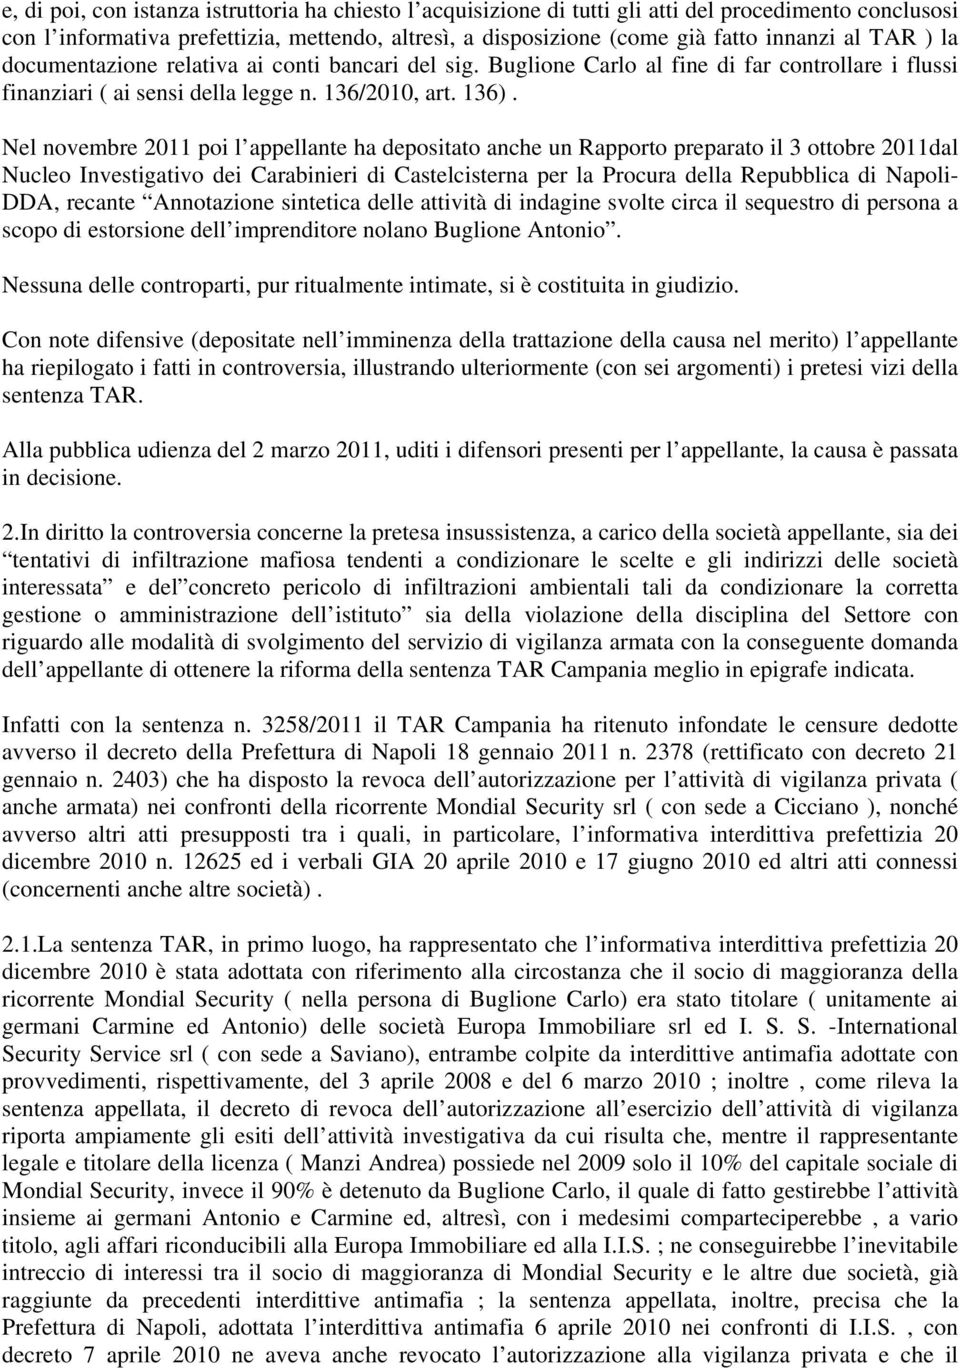 Nel novembre 2011 poi l appellante ha depositato anche un Rapporto preparato il 3 ottobre 2011dal Nucleo Investigativo dei Carabinieri di Castelcisterna per la Procura della Repubblica di Napoli-